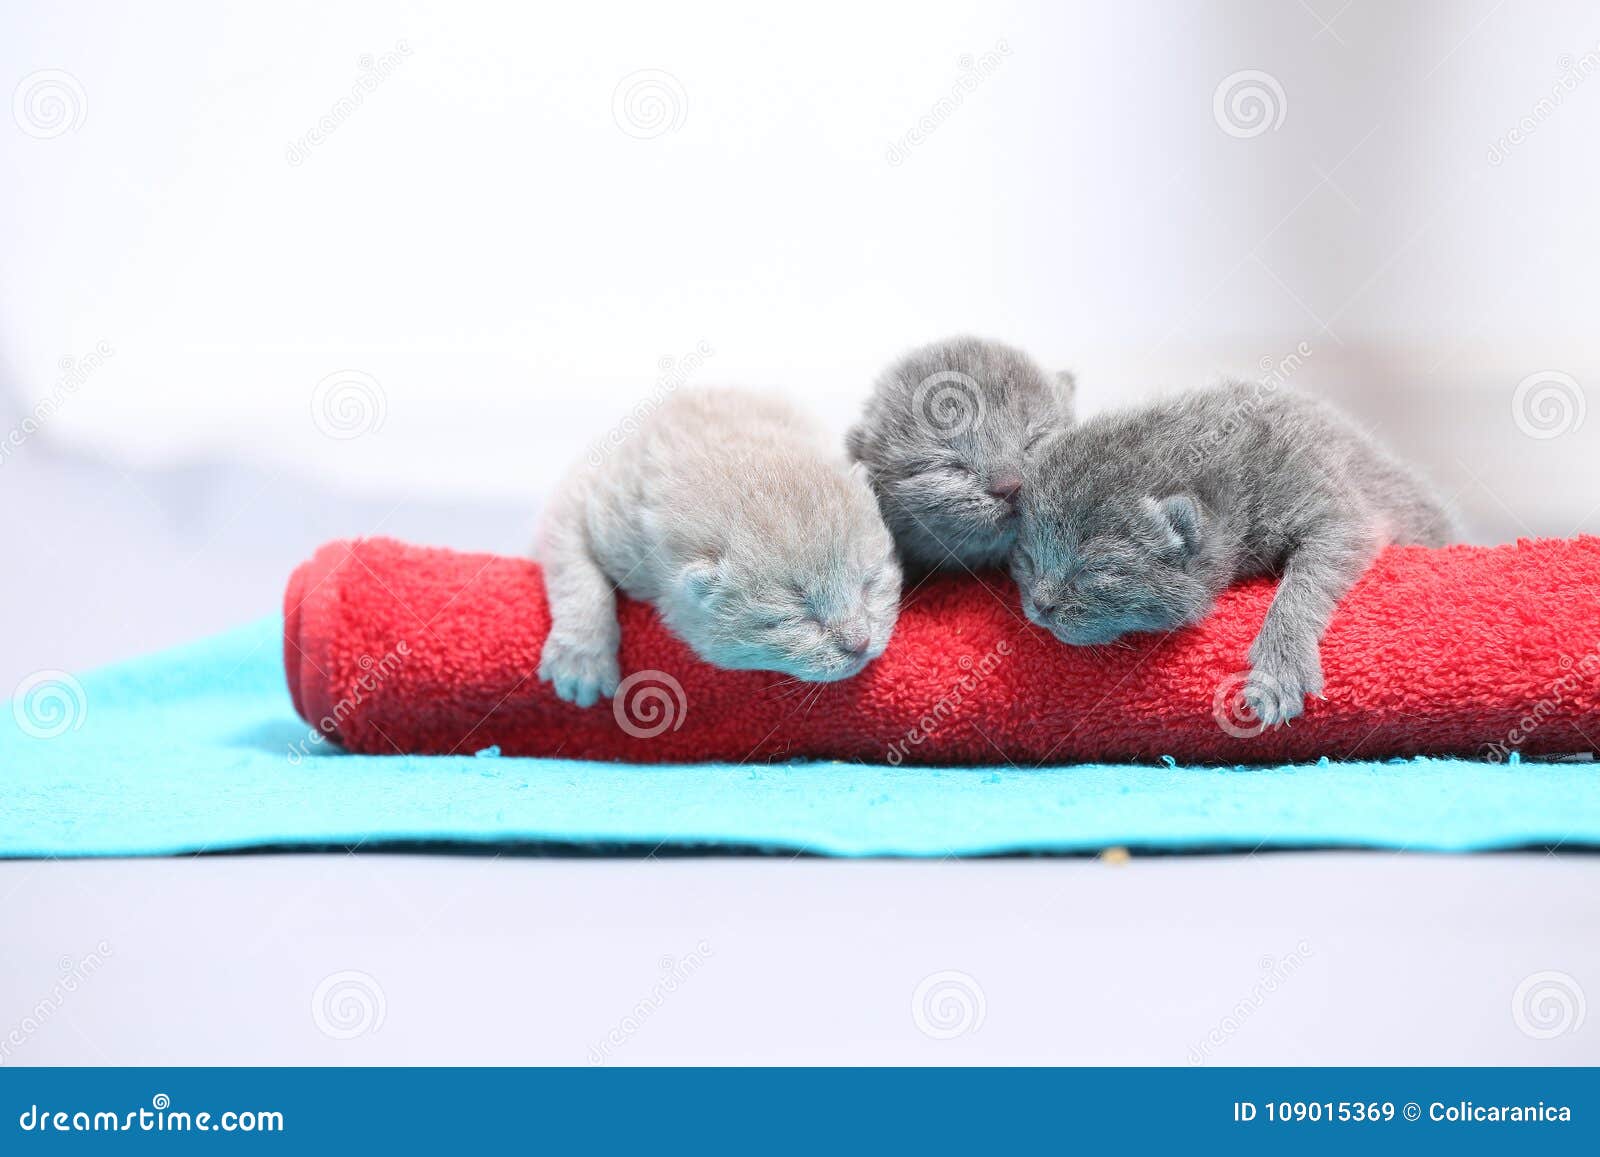 cute little kittens on a towel